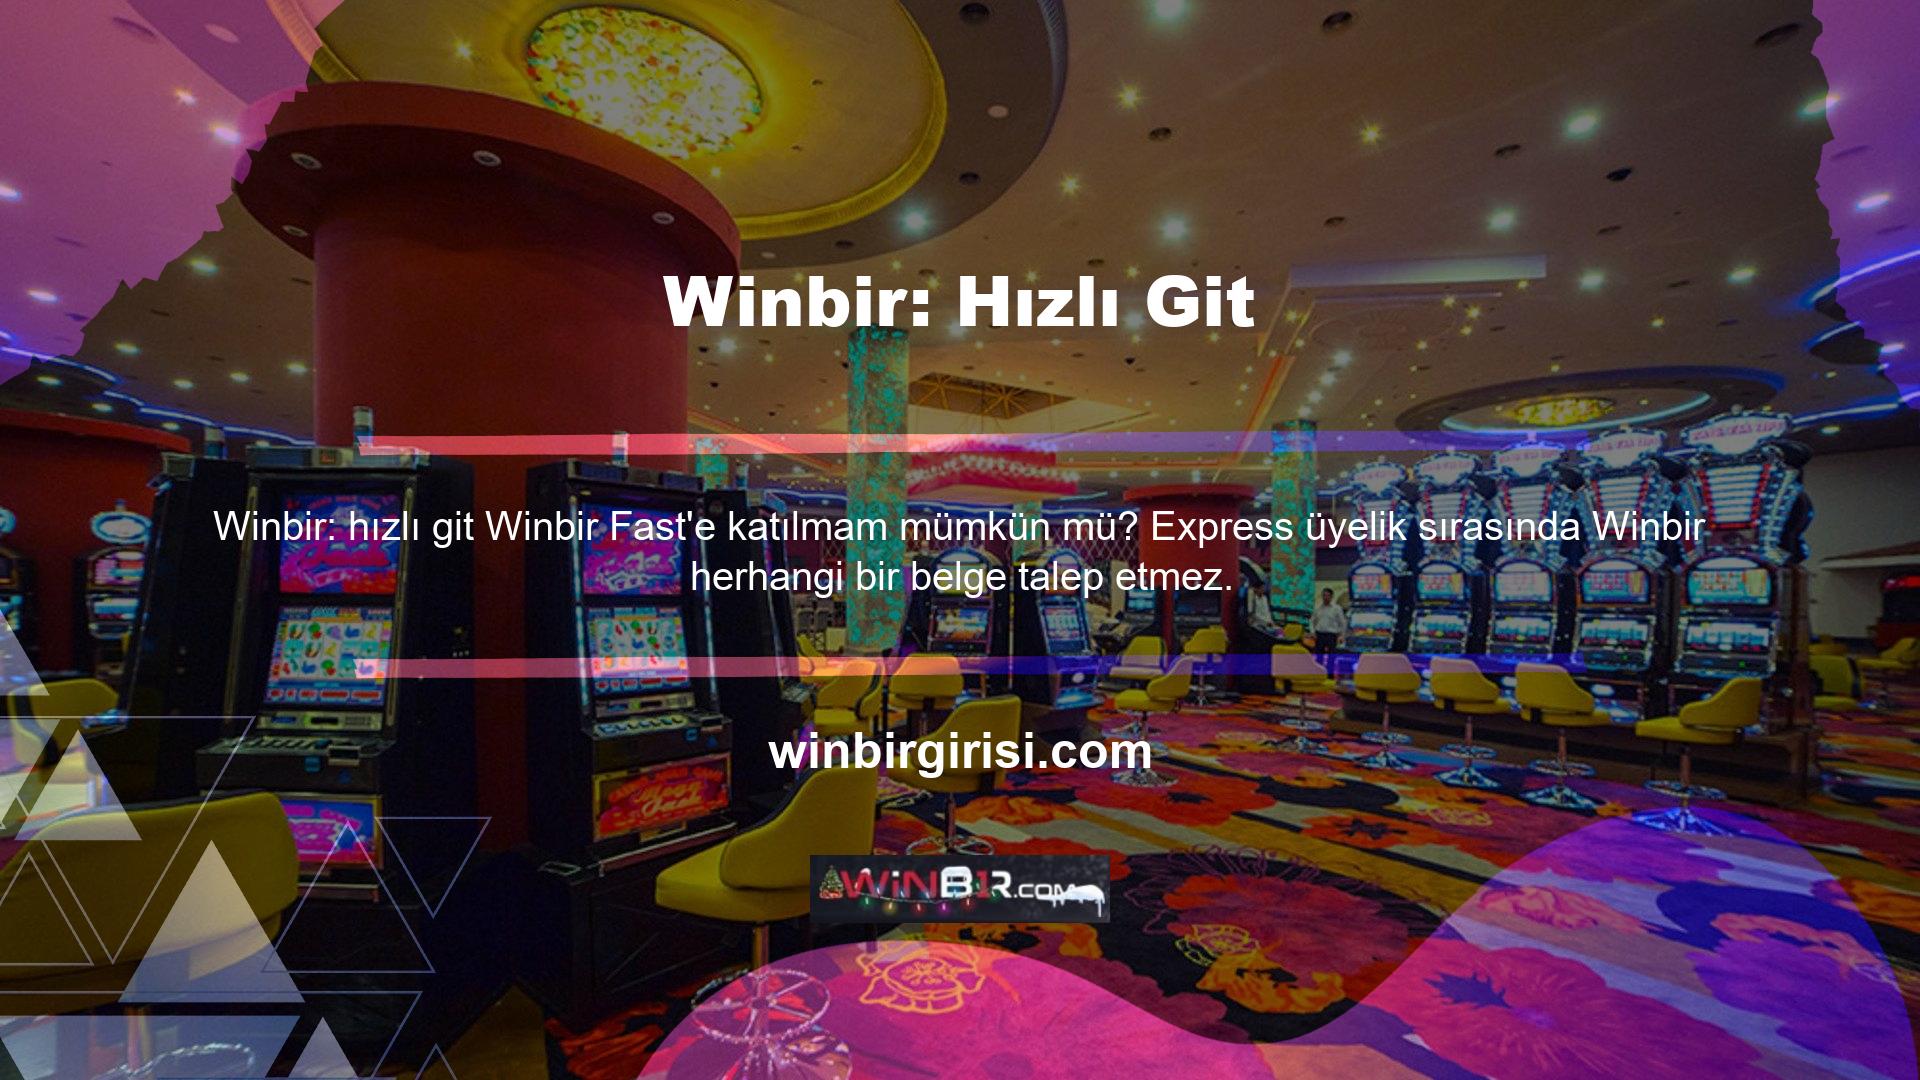 Canlı bahis sitelerine ve casino sitelerine kaydolmak bu Winbir tarafından daha hızlı ve daha kolay bir şekilde kolaylaştırılmaktadır